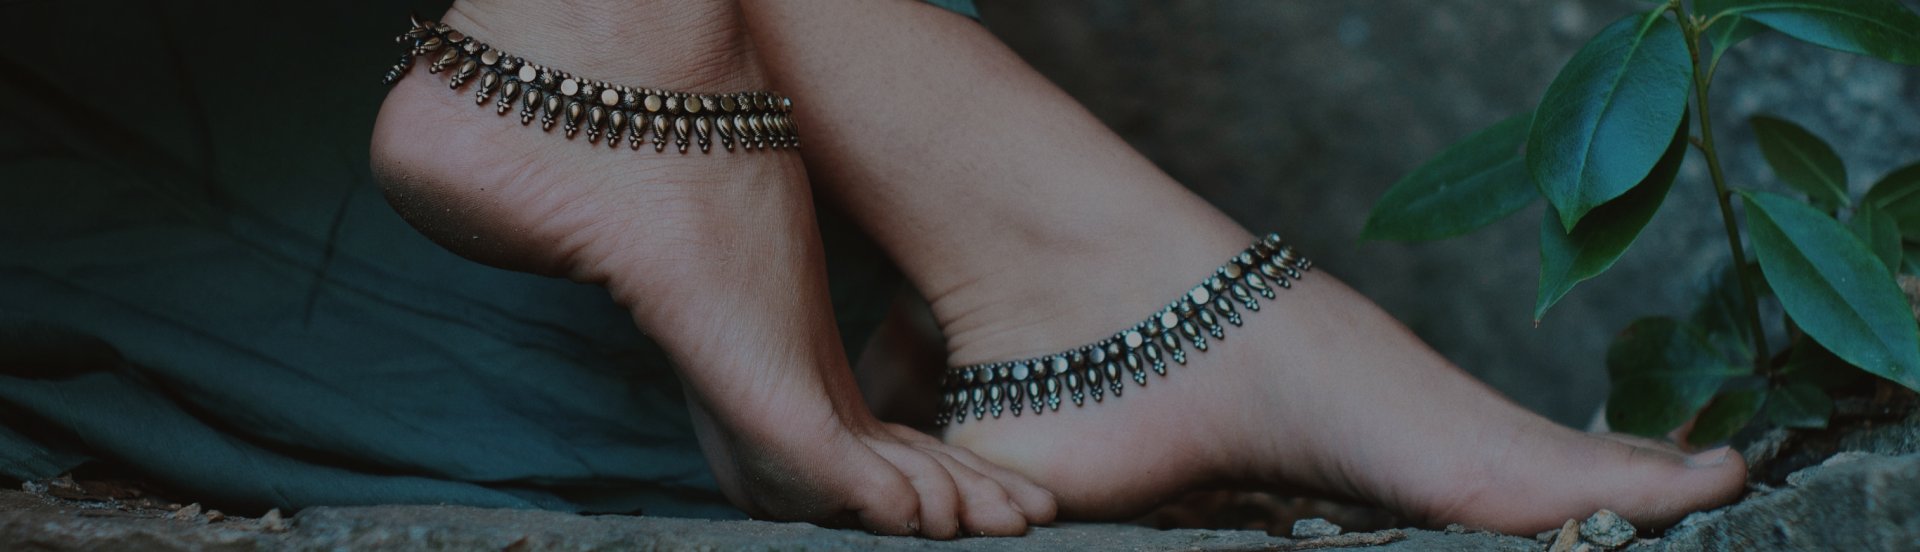 Anklets